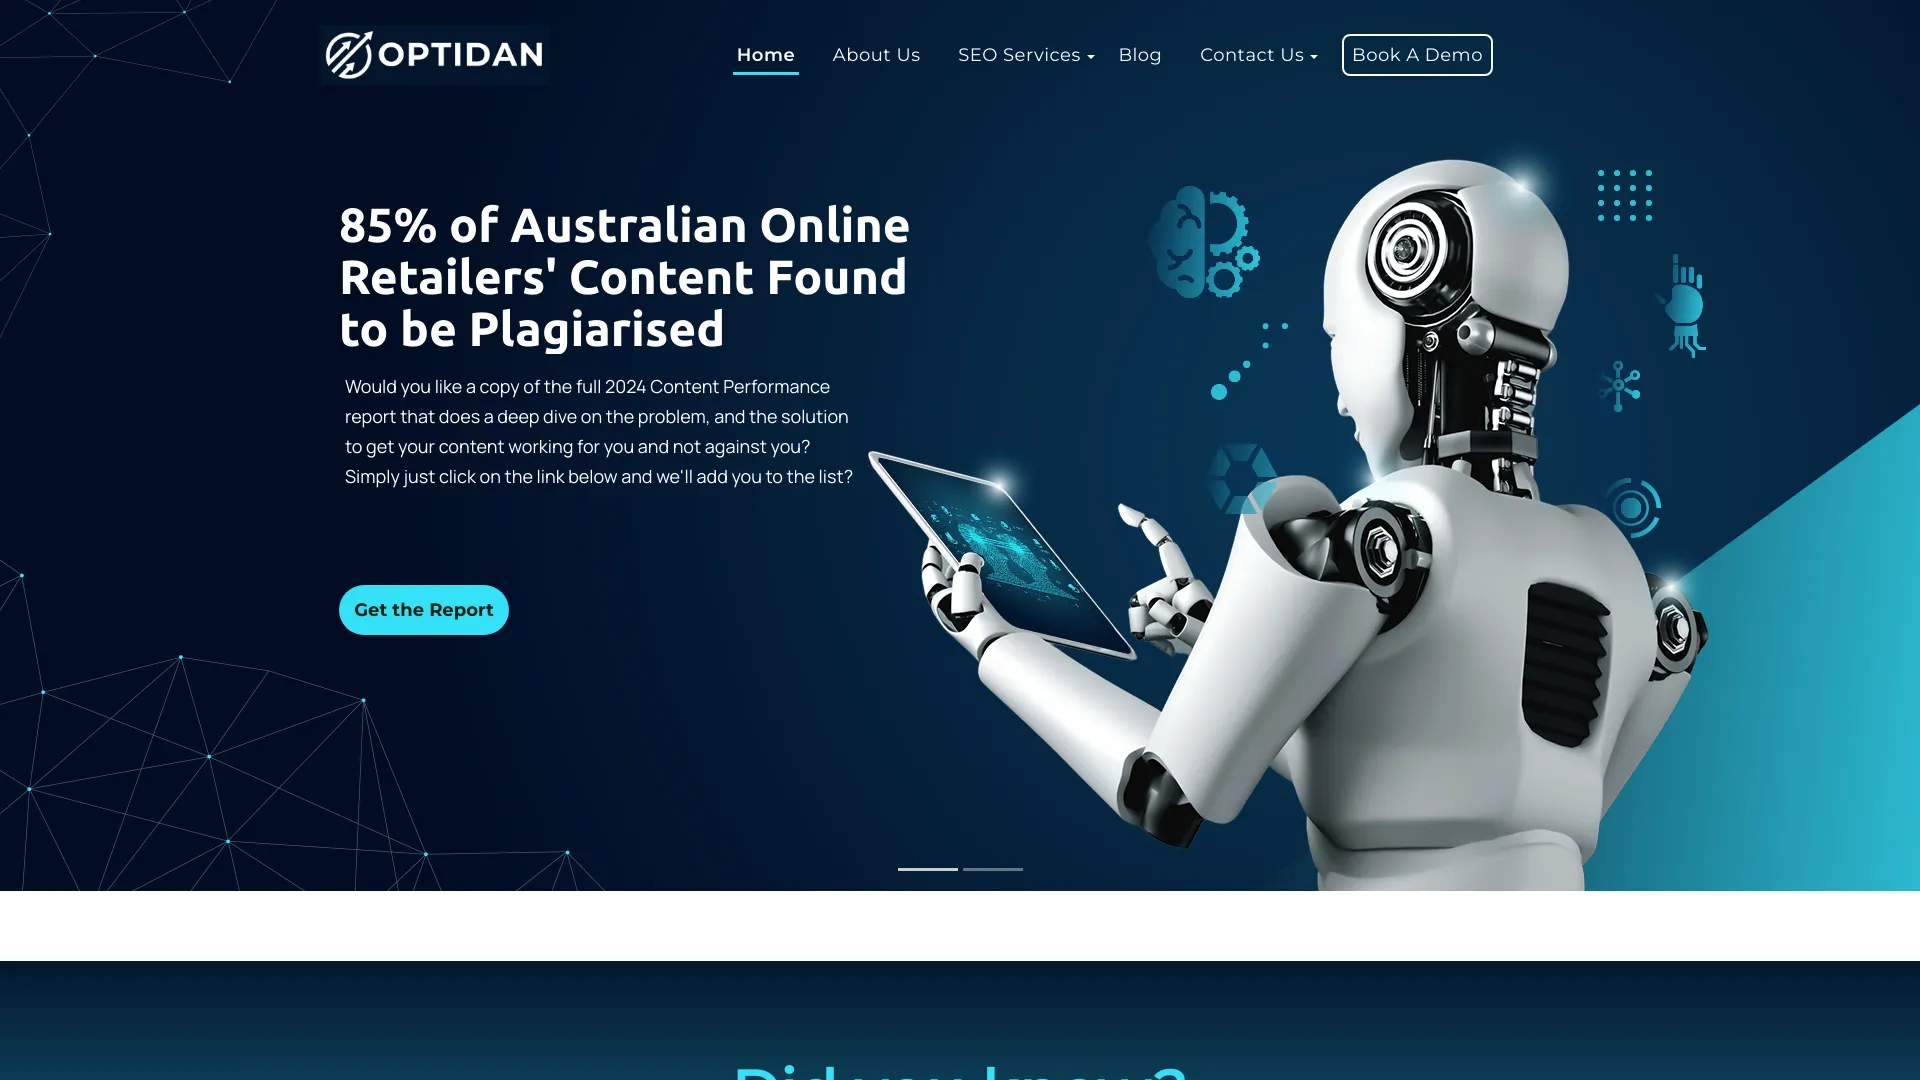 Servicio de SEO de IA en Australia | Optidan